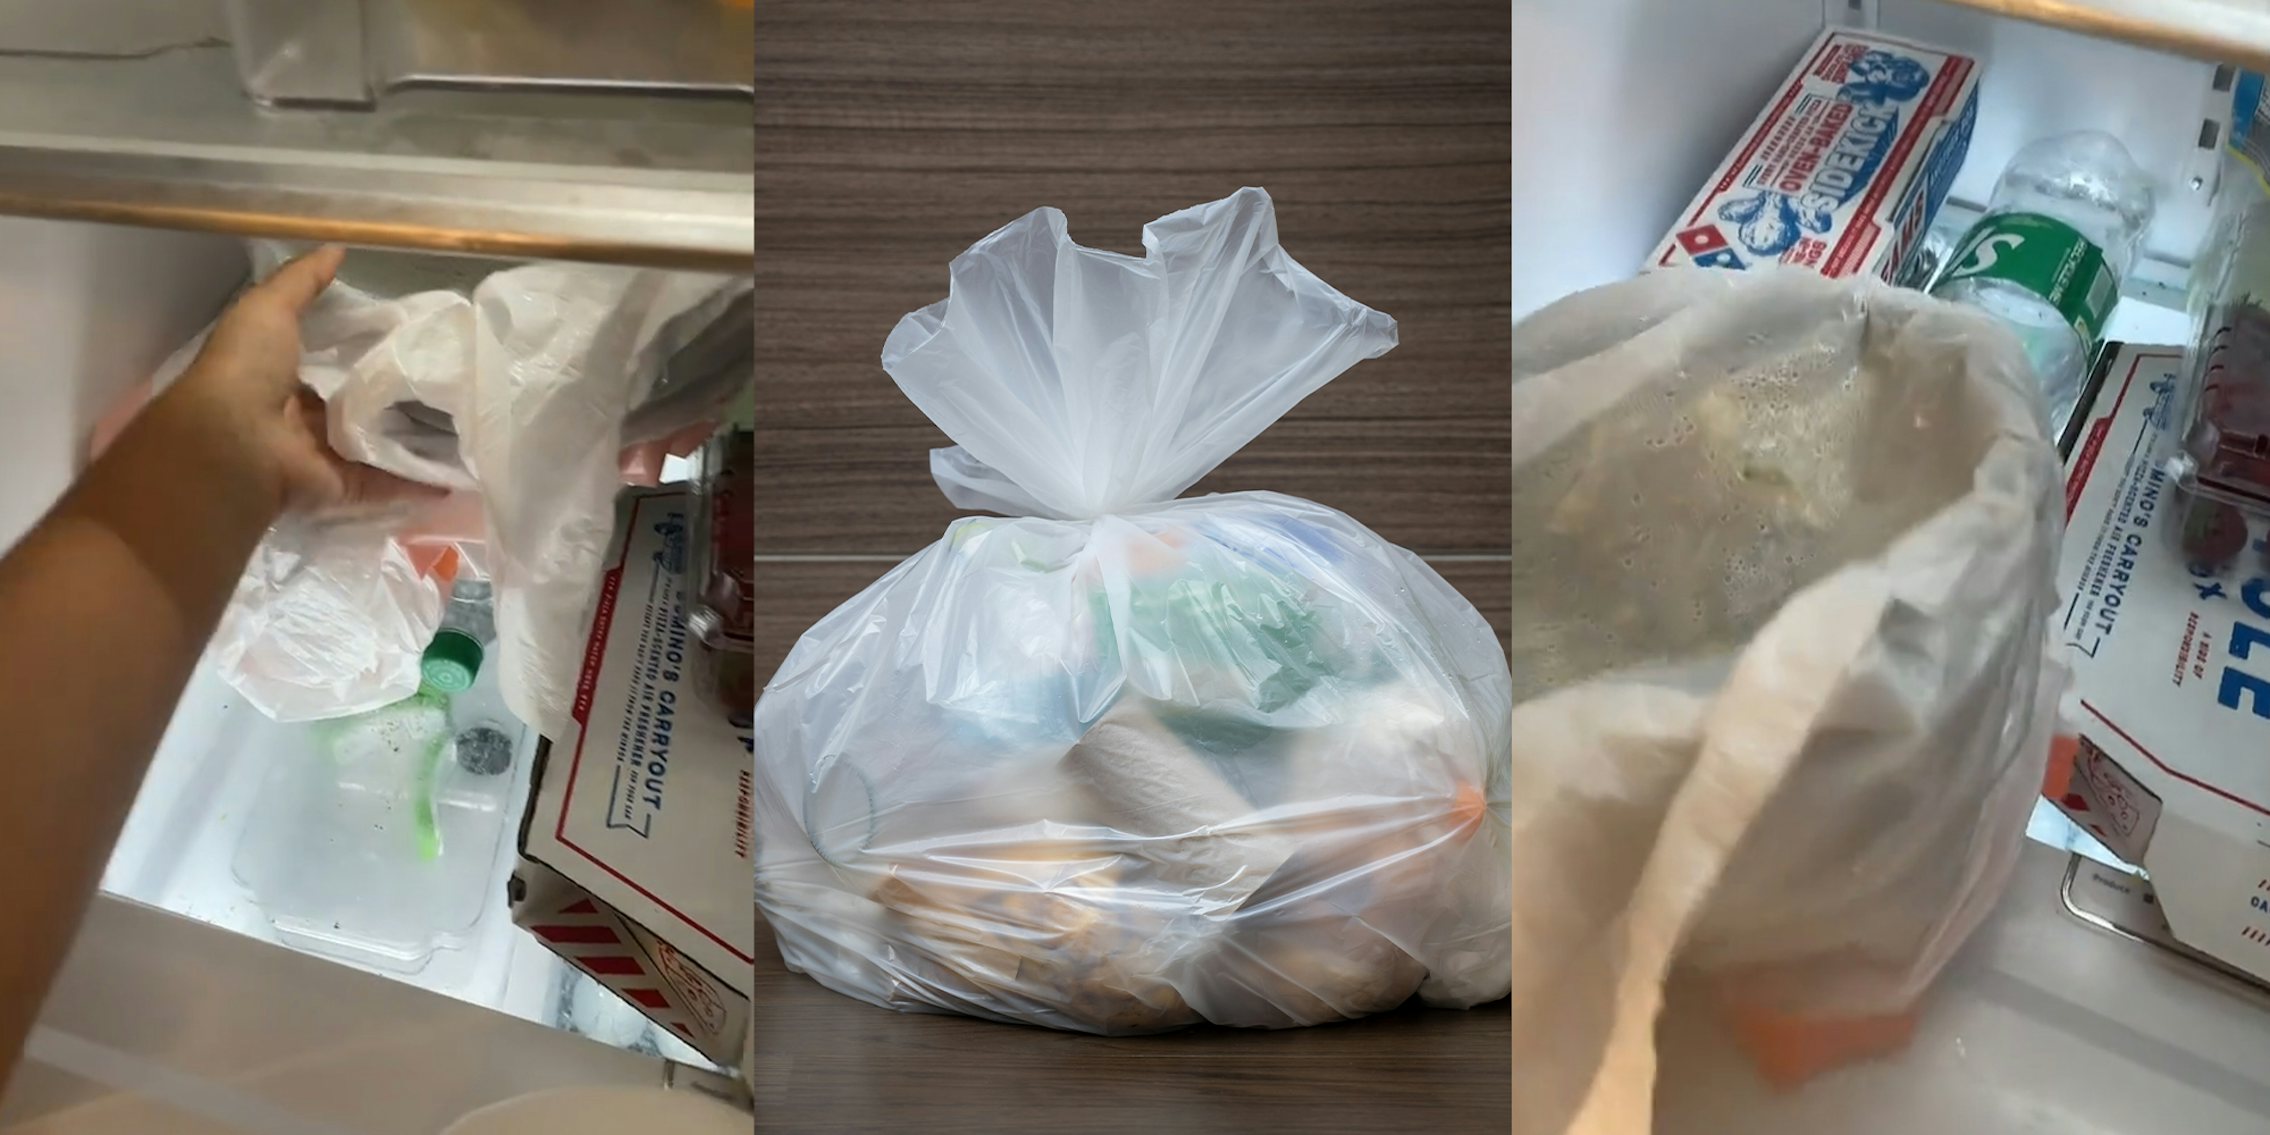 Trash bag inside of fridge